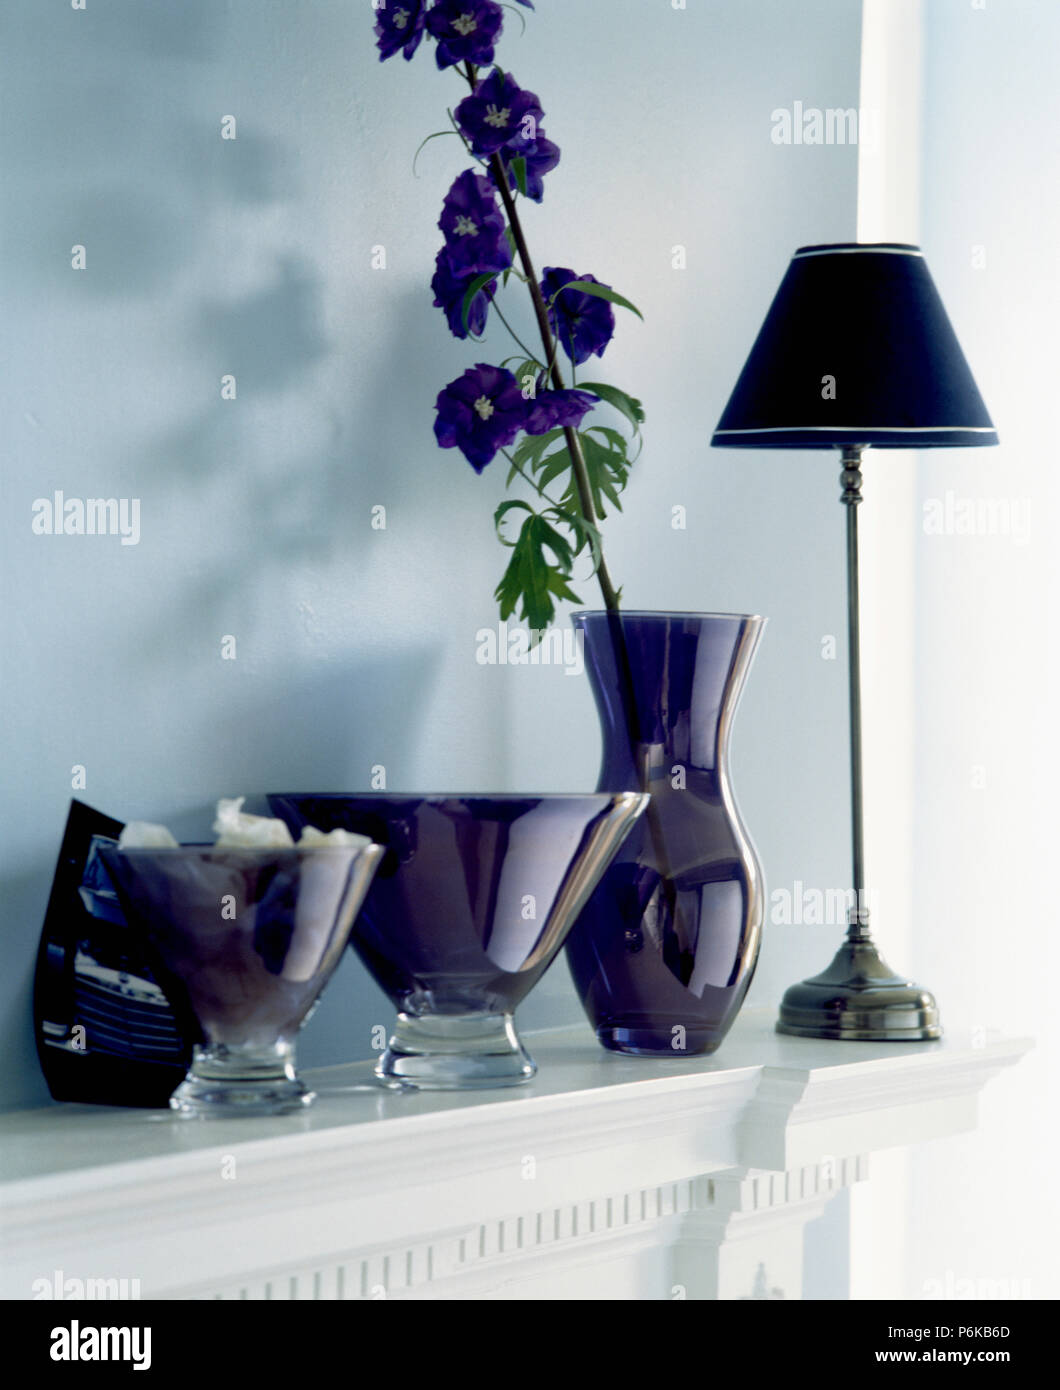 In der Nähe von dunklen lila Stengeln Vasen und hohe Vase mit einziger blauer Rittersporn am Kaminsims mit schwarze Lampe Stockfoto